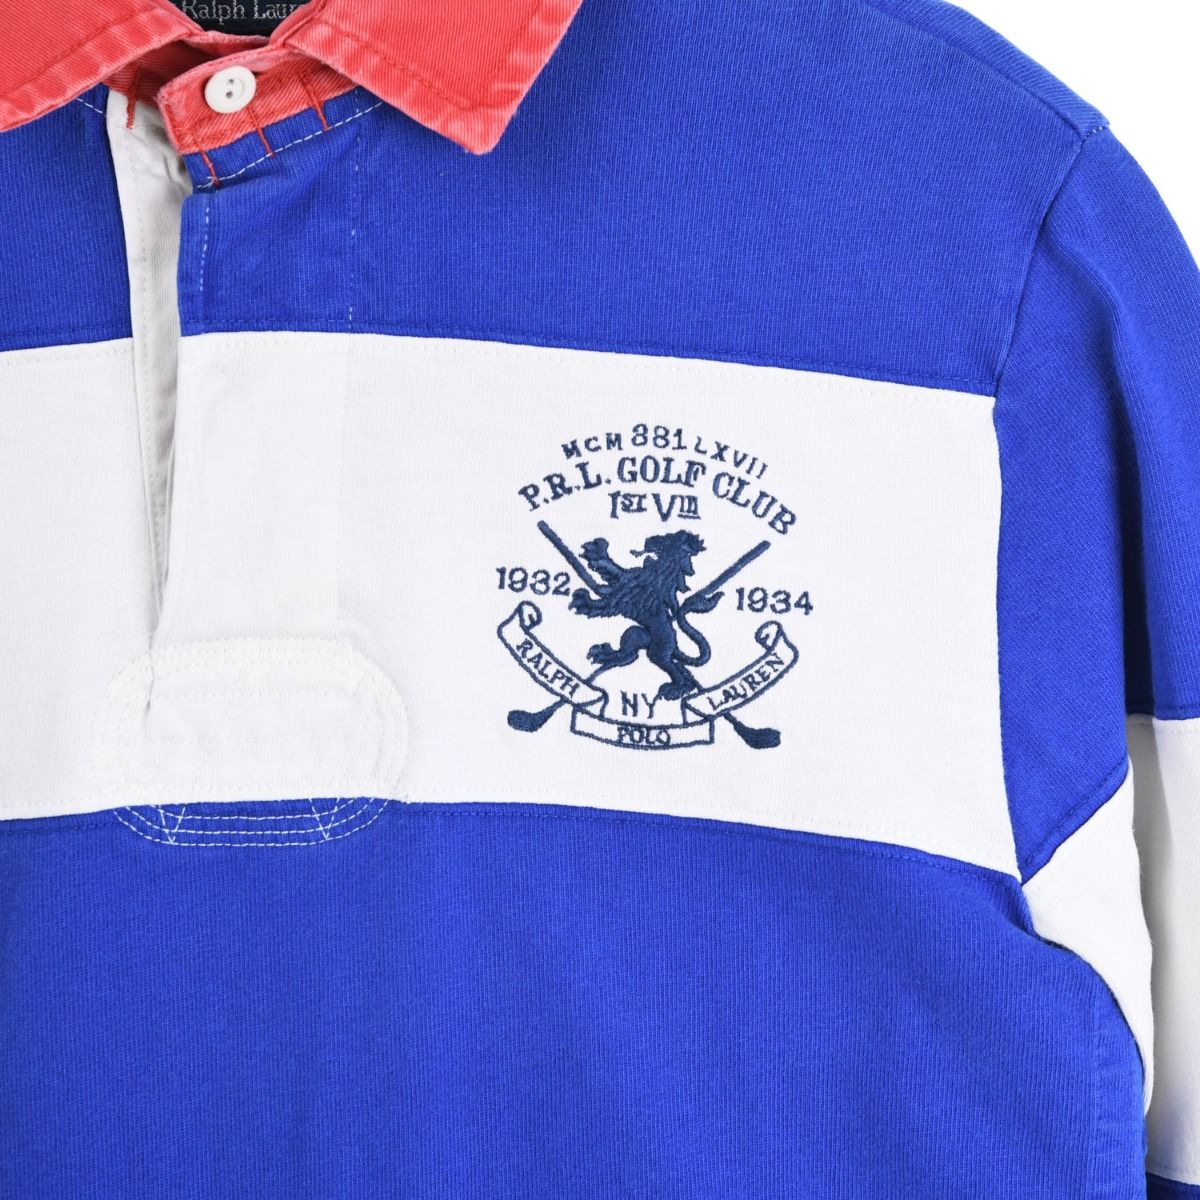 Ralph Lauren Rugby Blue Shirt